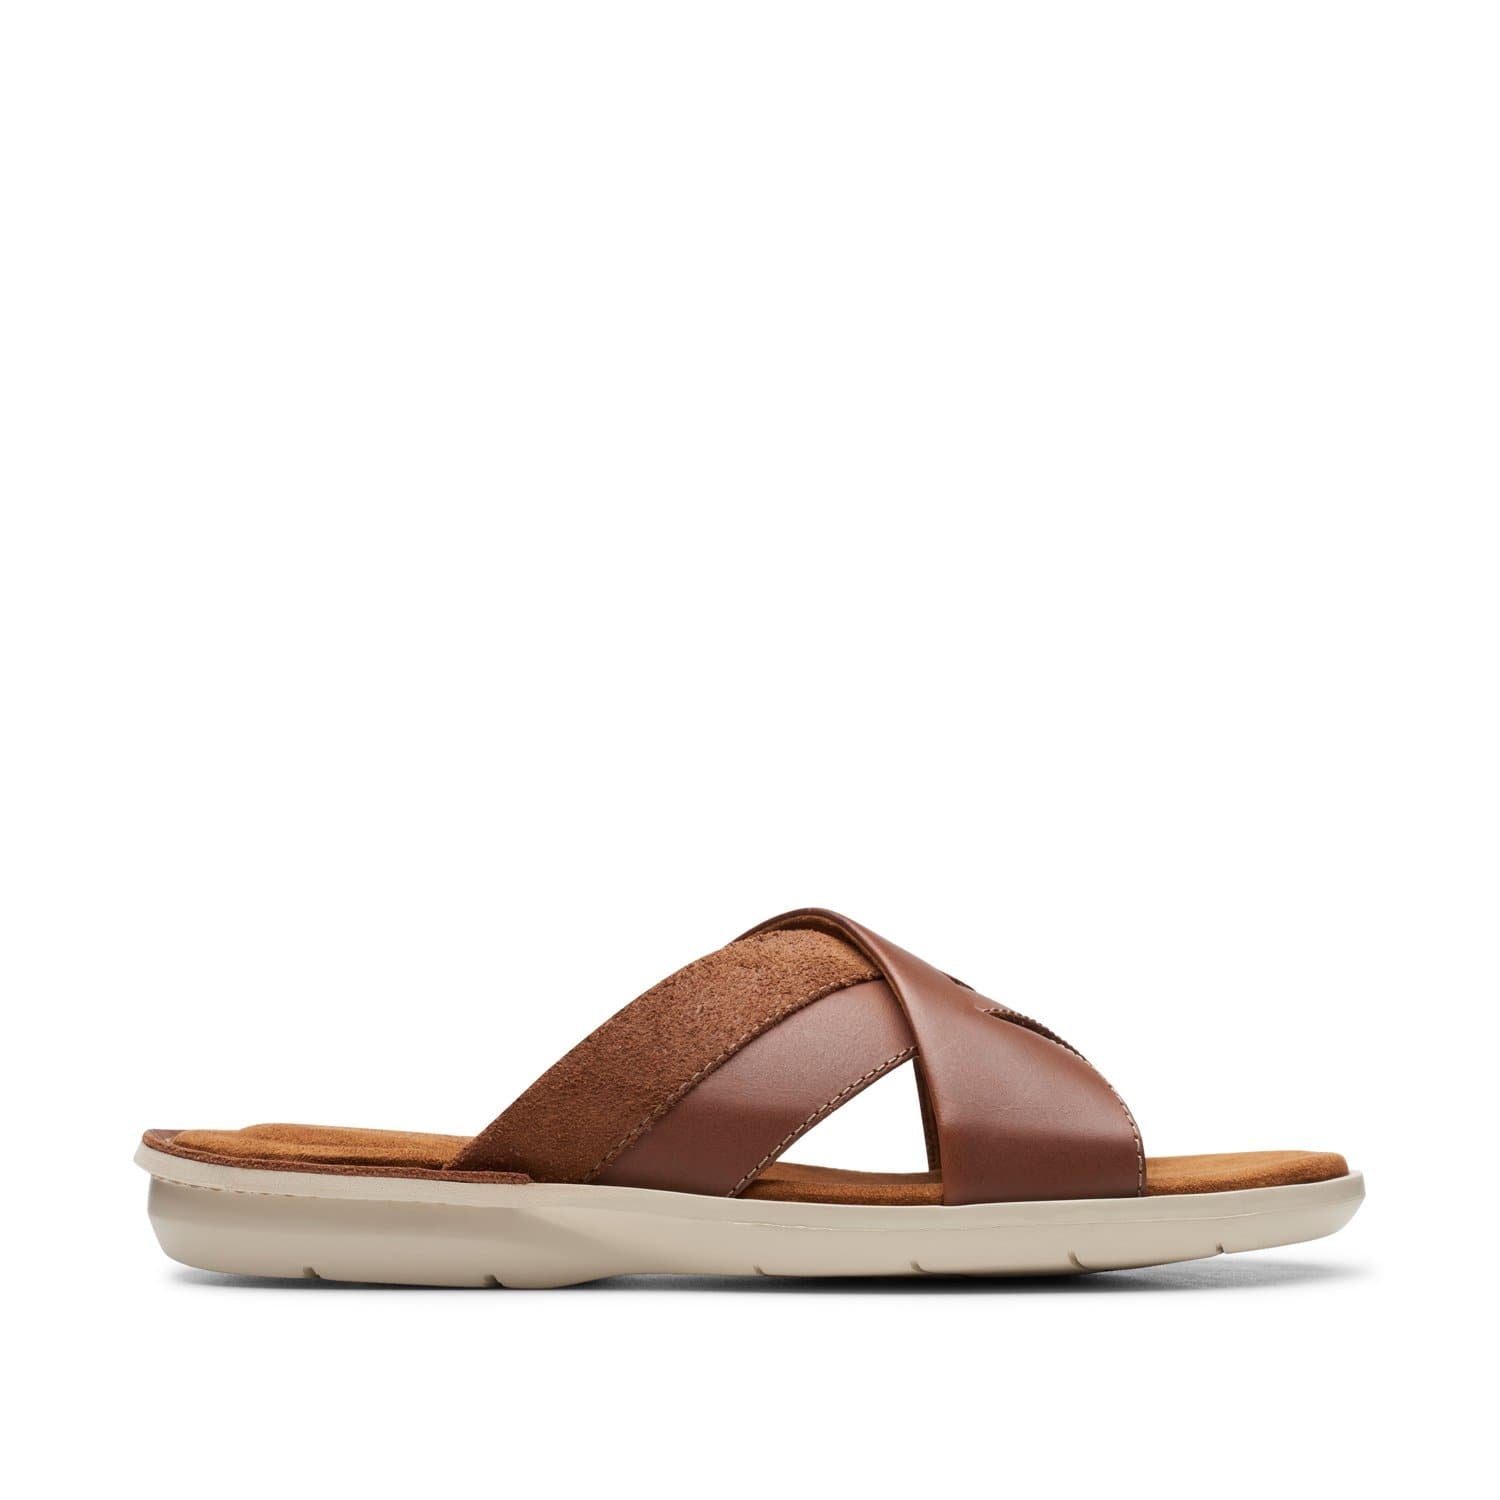 Clarks-Ellison-Free-Men's-Sandals-Tan-Leather-26149910